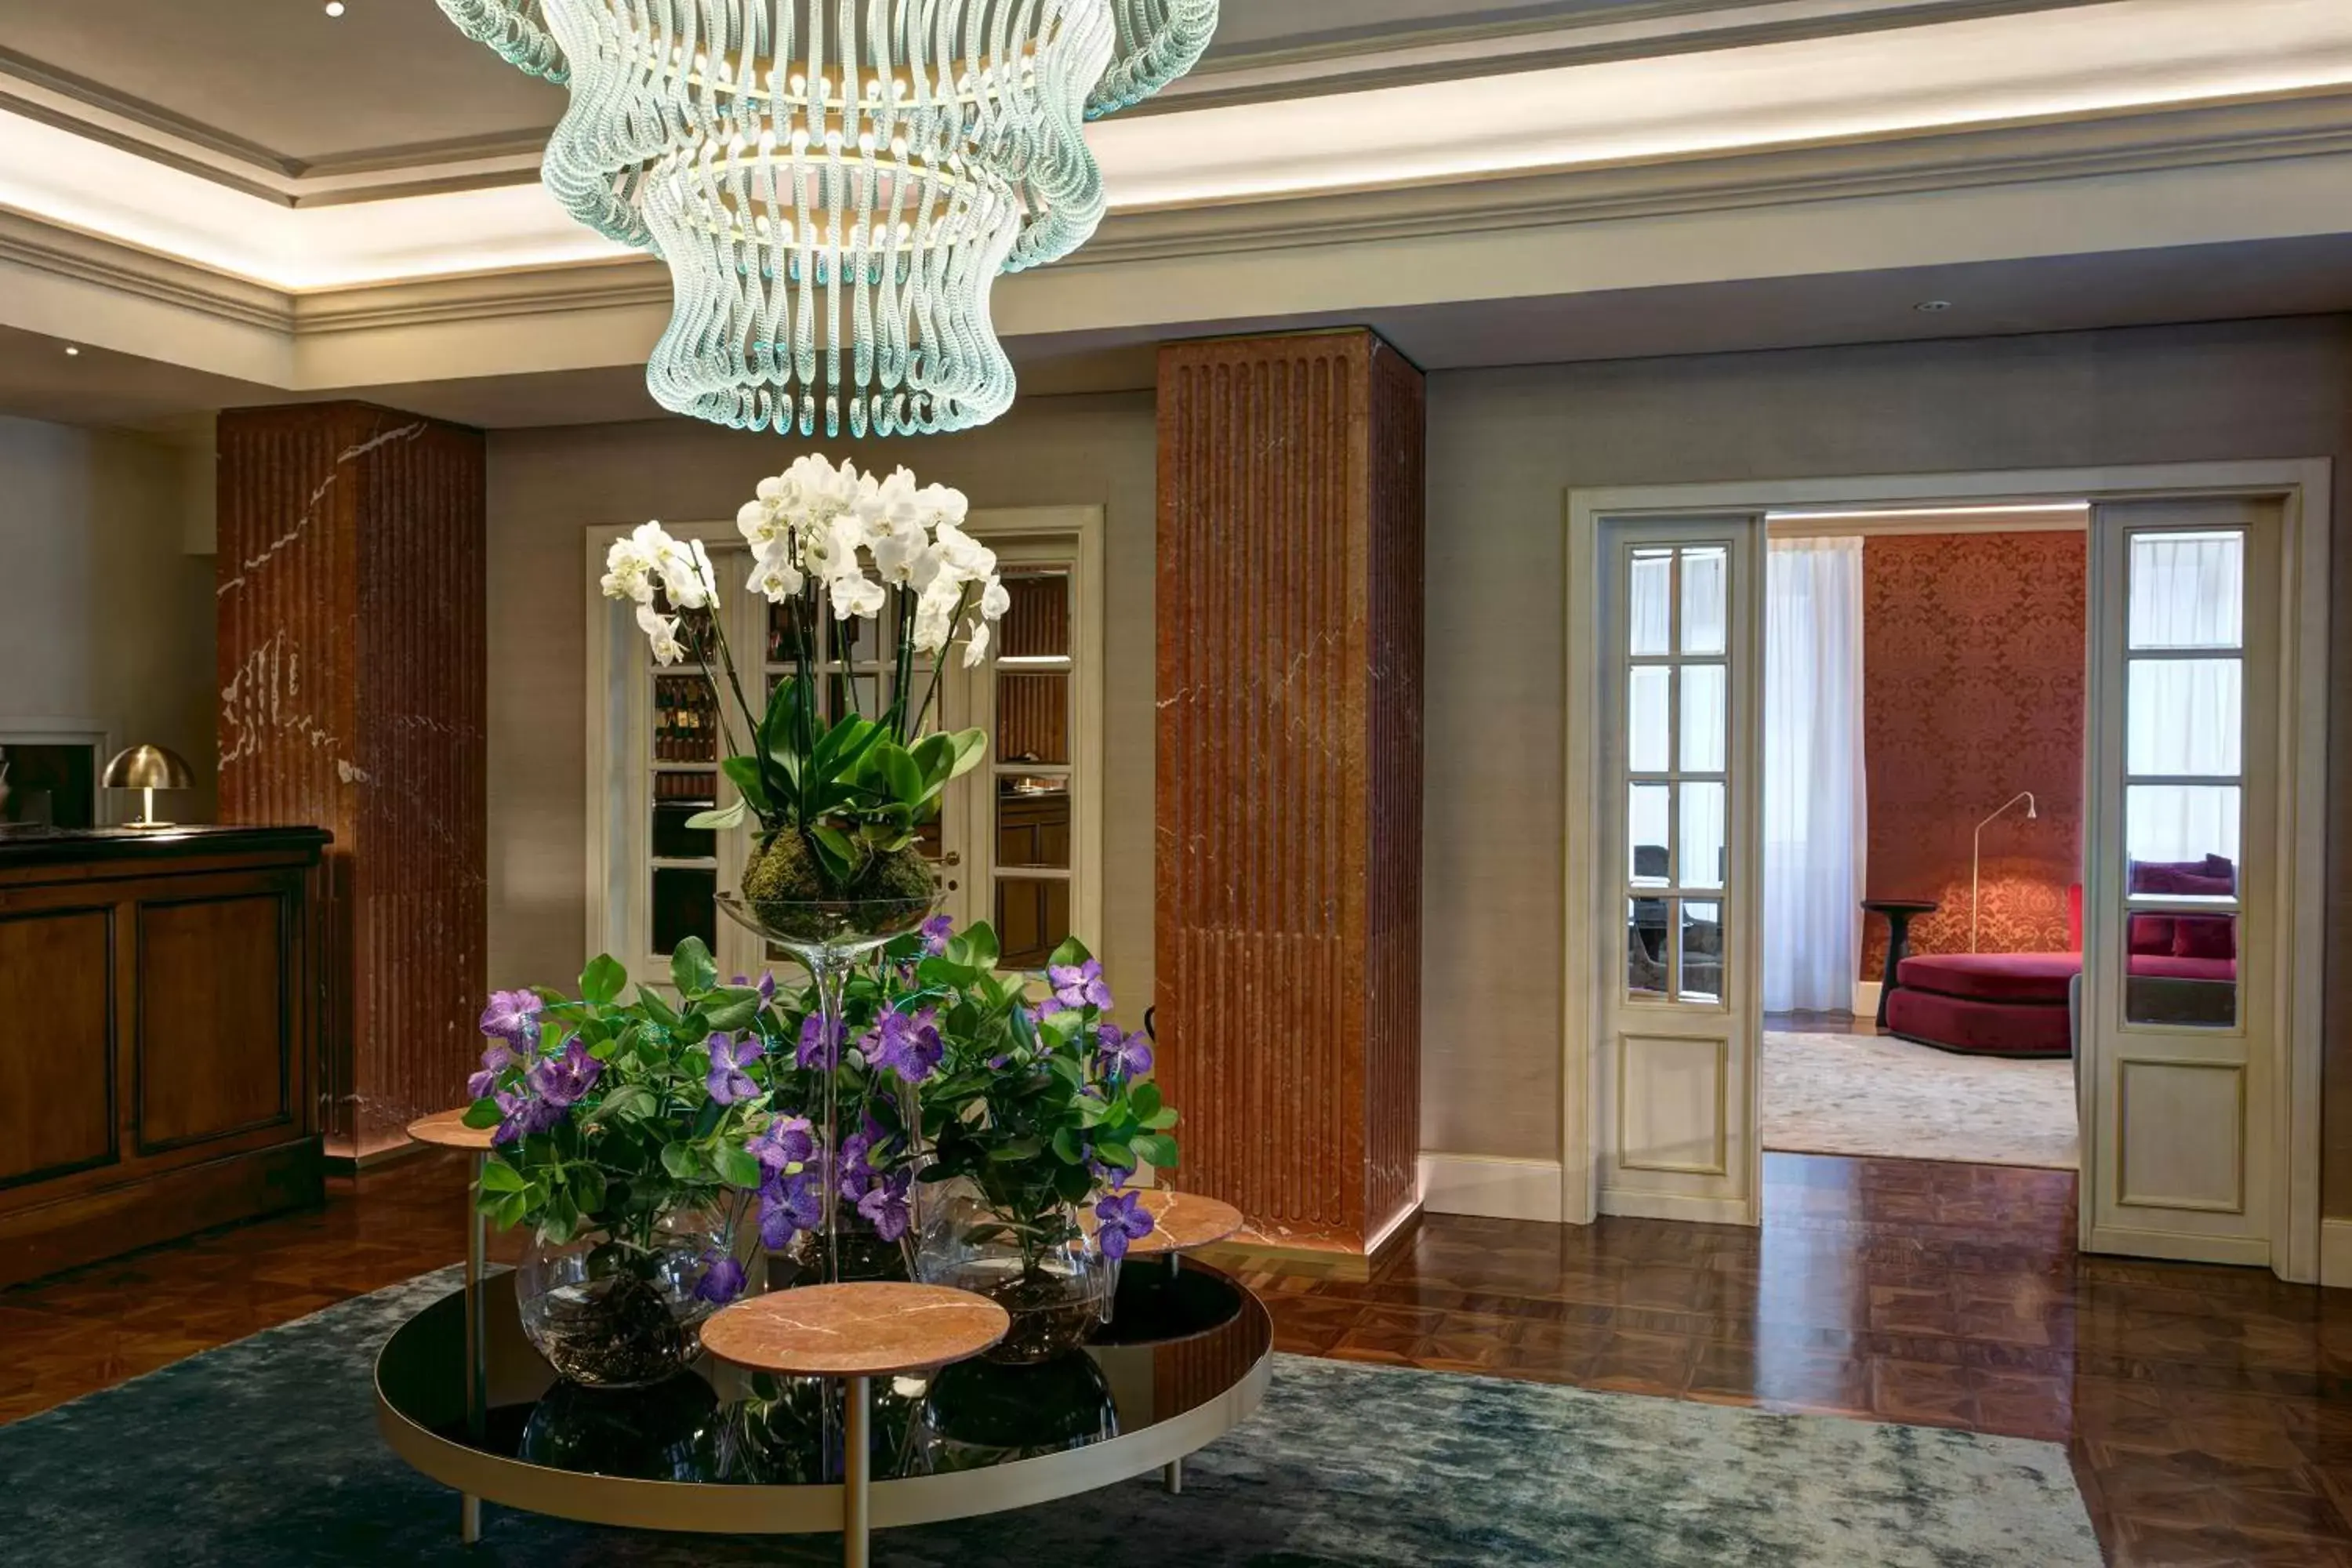 Lobby or reception in Grand Hotel Duchi d'Aosta